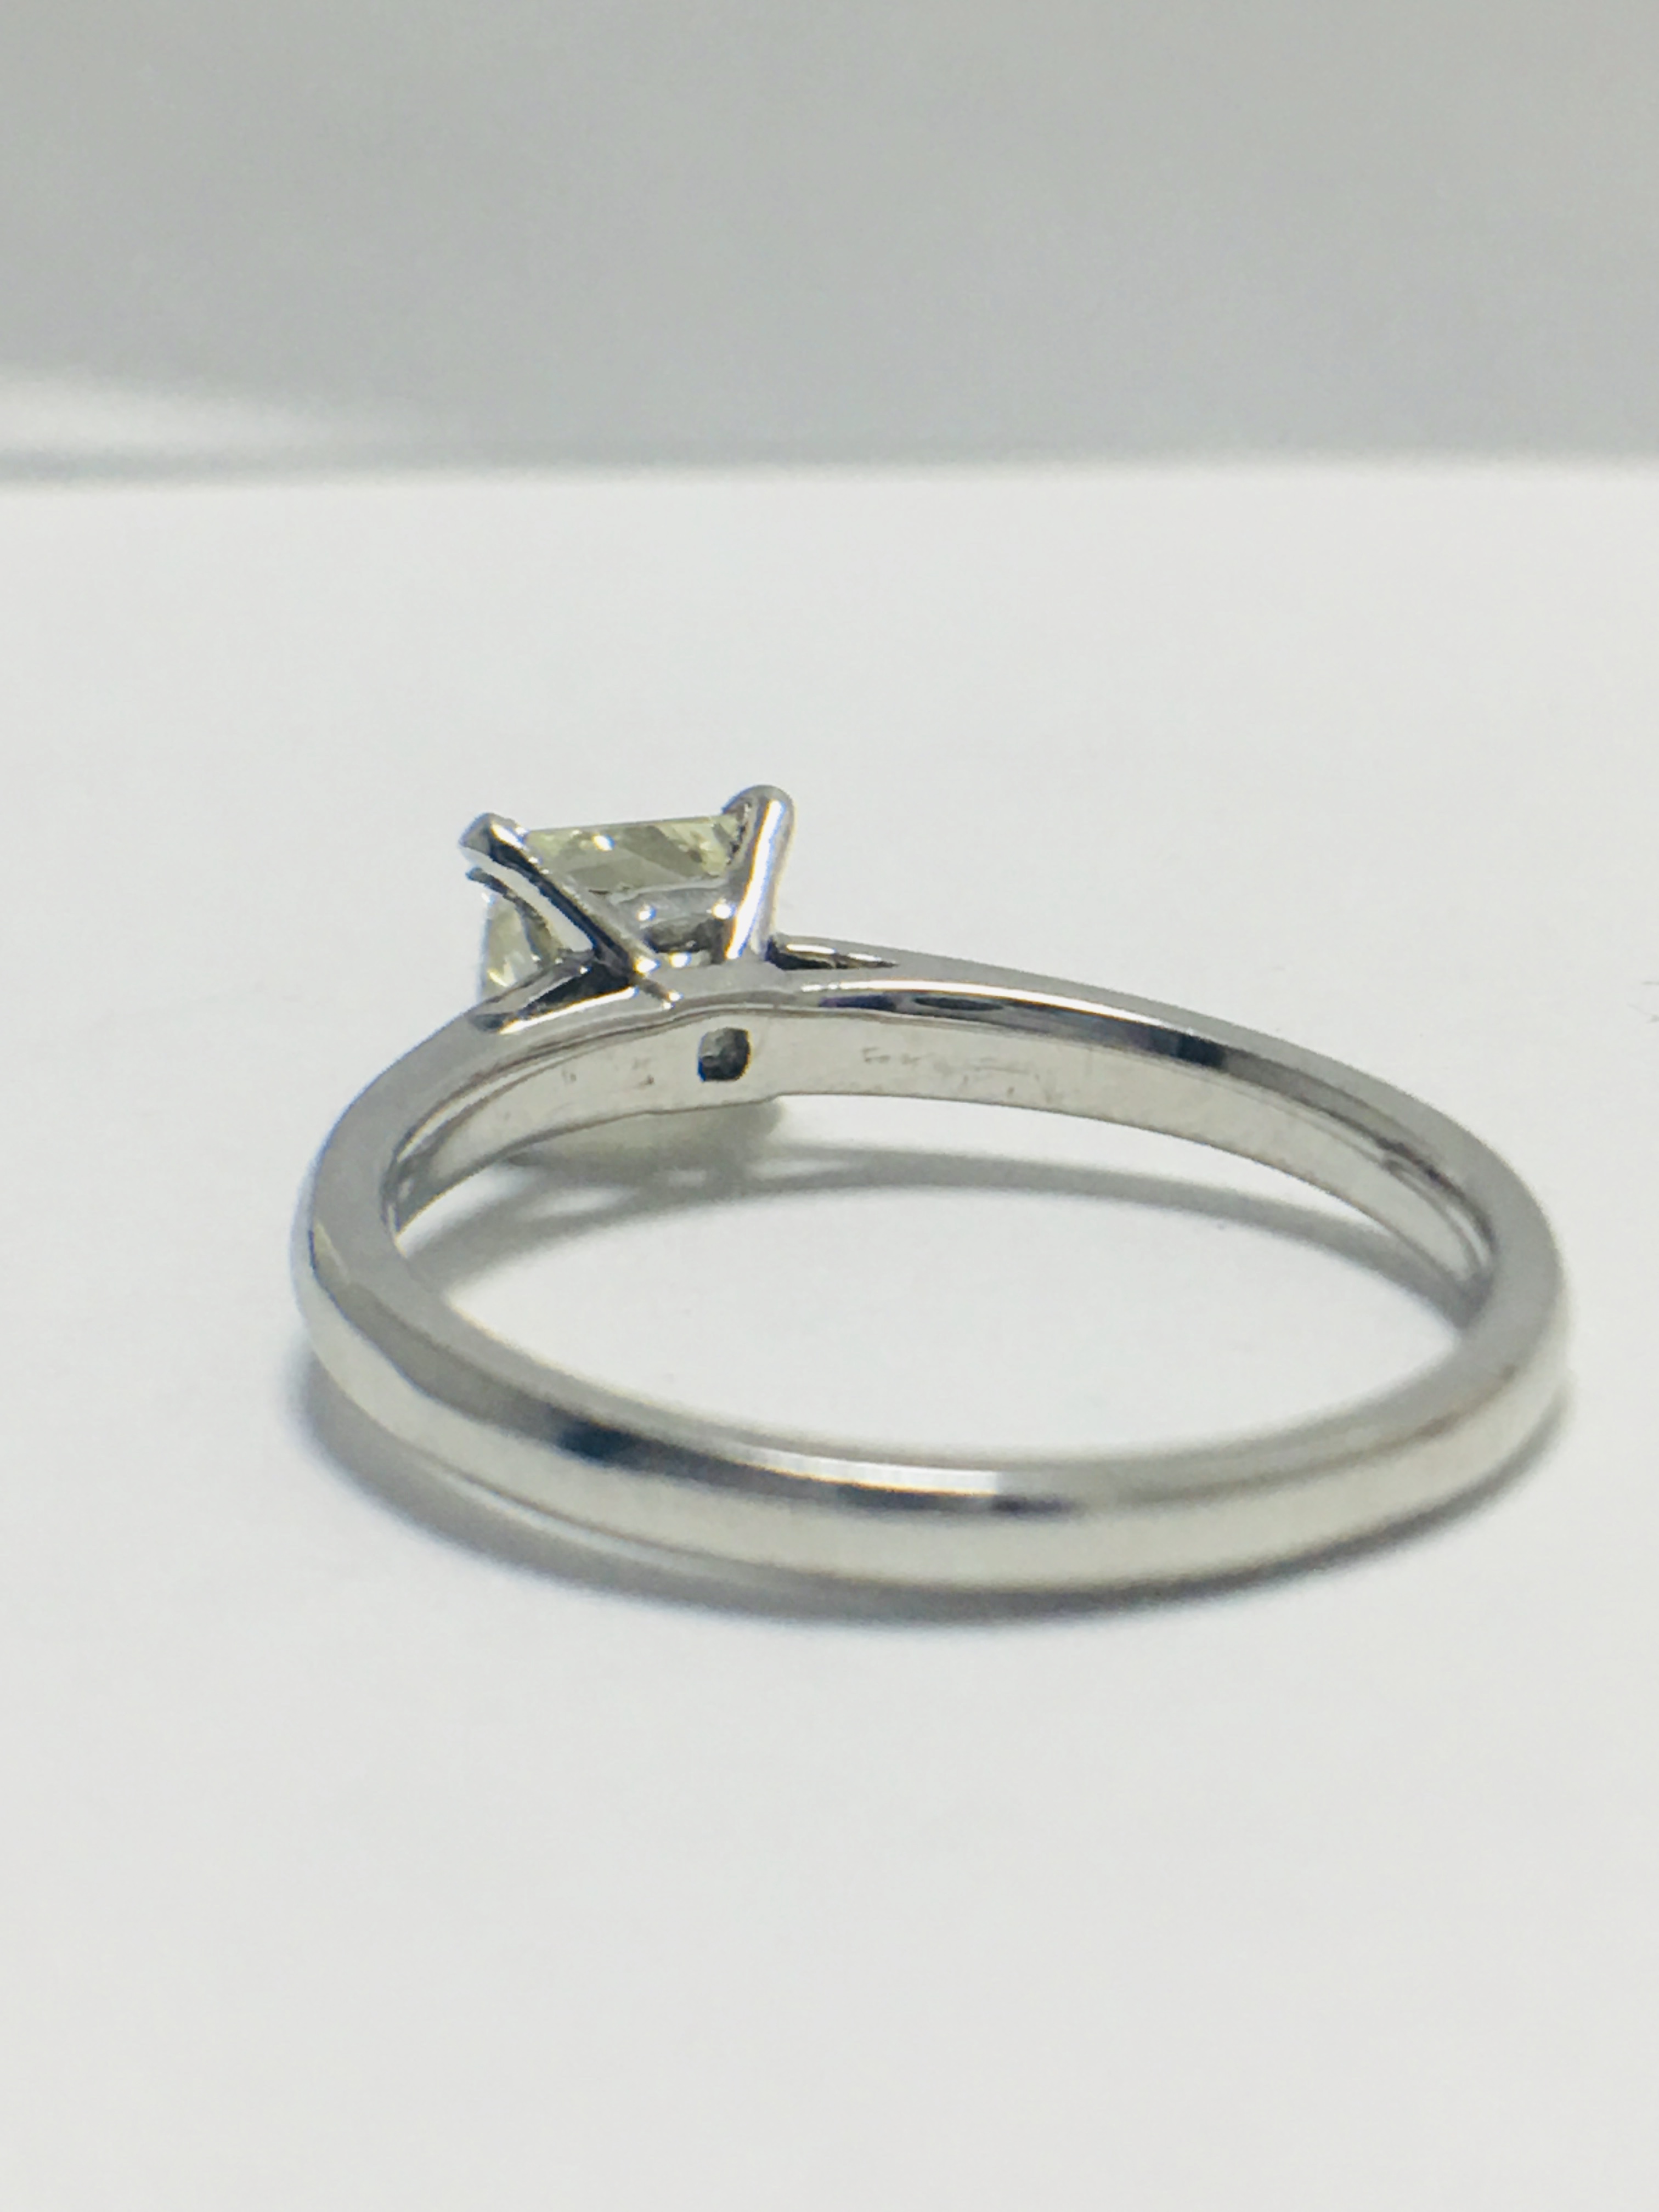 1ct platinum Diamond solitaire ring - Image 4 of 8